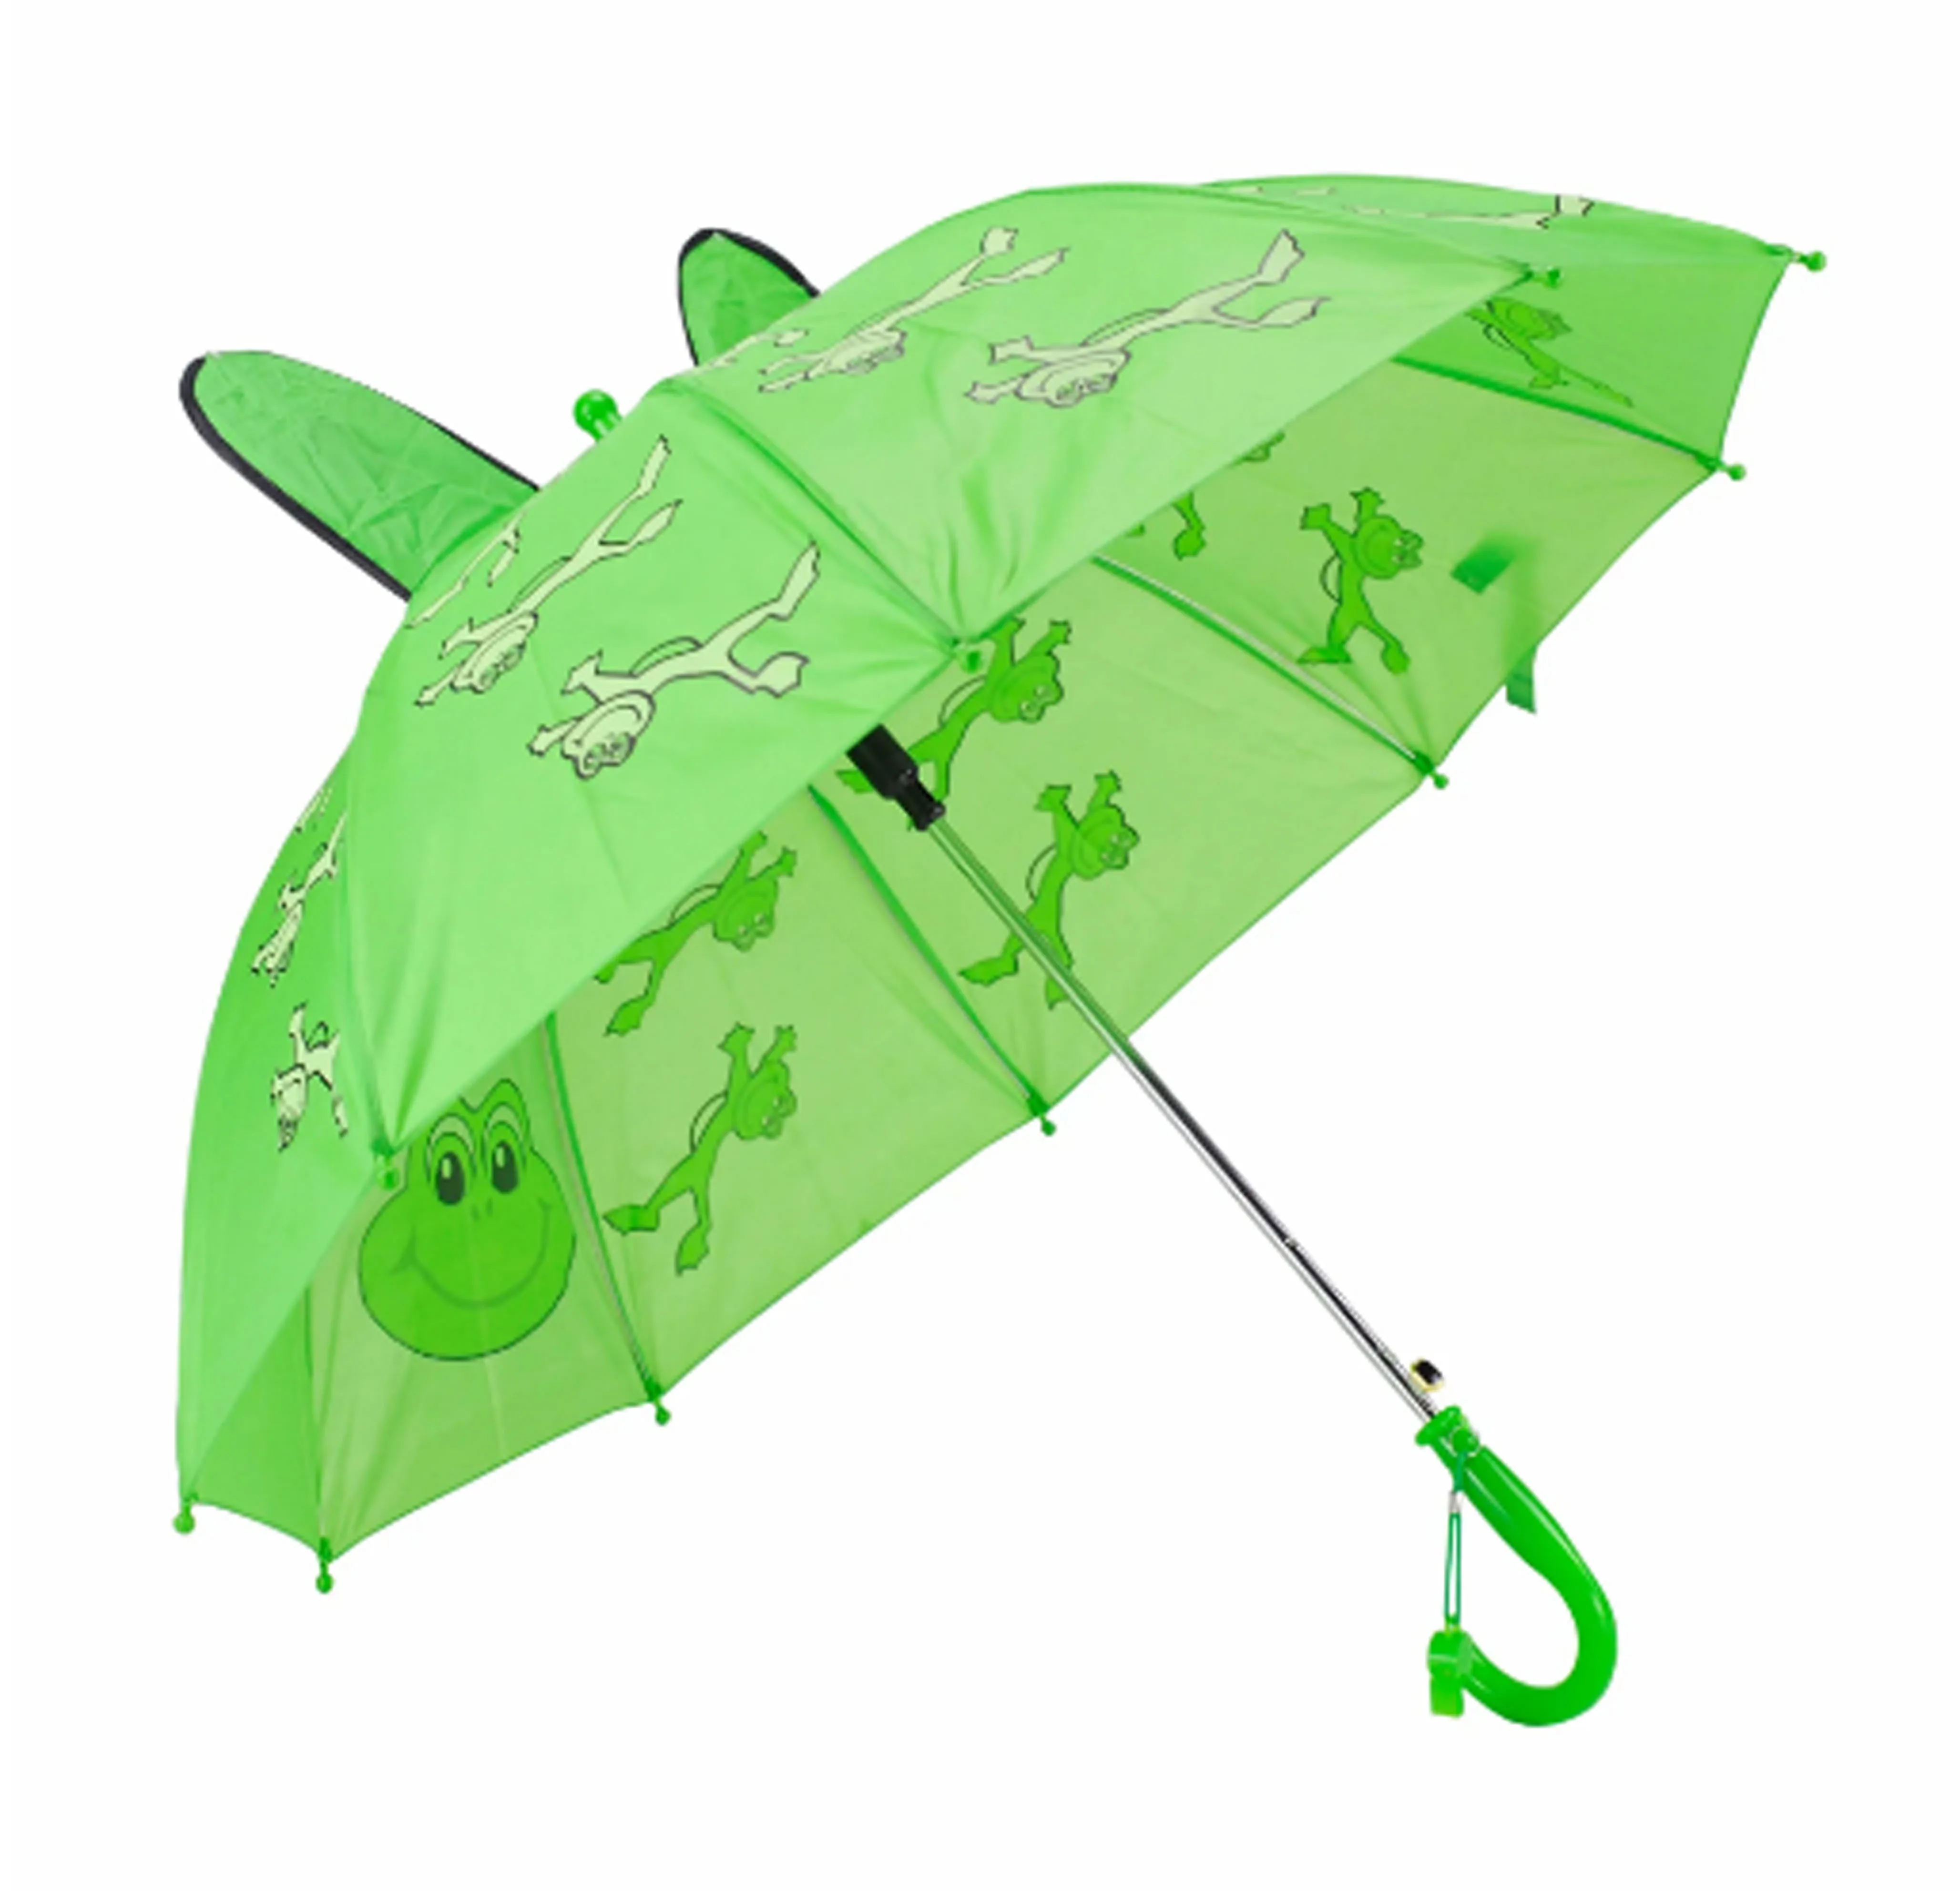 Глаз зонтик. Зонт от дождя детский. Зонт с глазами. Зонт детский зеленый. Зонт детский с глазами.